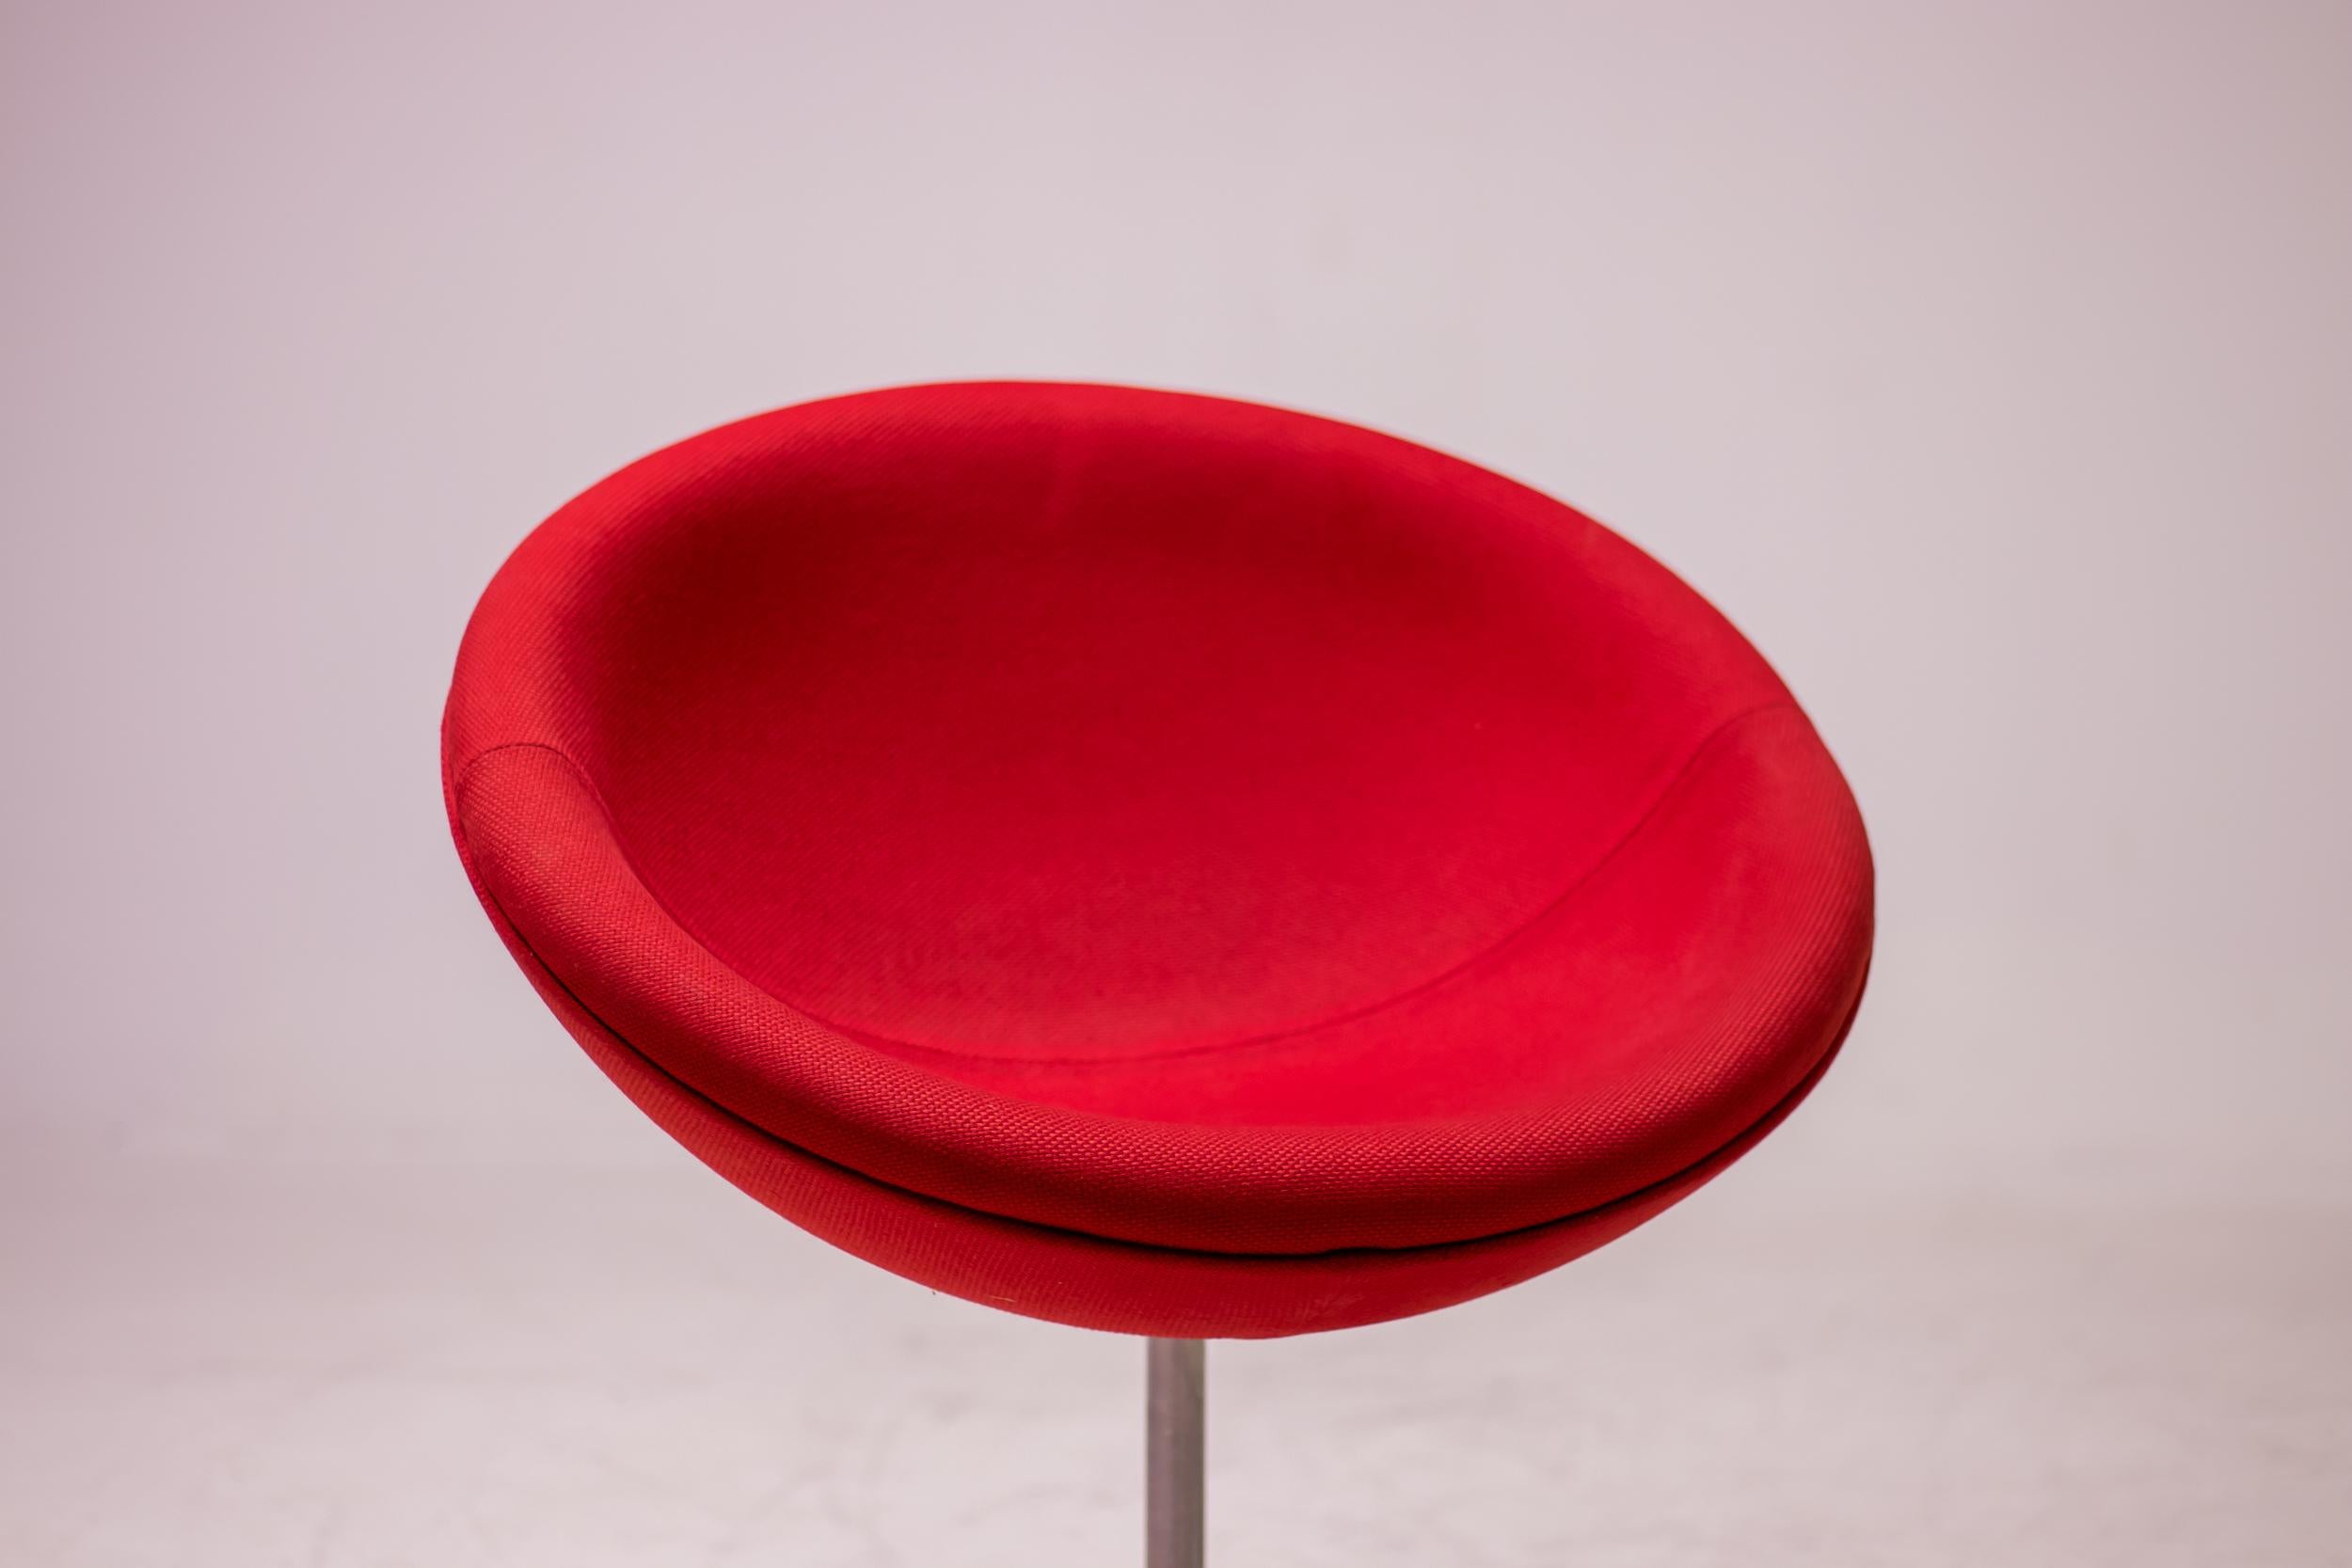 Fauteuil rouge iconique Icone conçu par Verner Panton et fabriqué par Vitra. Sur des roulements pivotants et légèrement inclinée, la coque d'assise rembourrée est confortable - aussi bien pour une assise détendue, penchée en arrière, que pour une